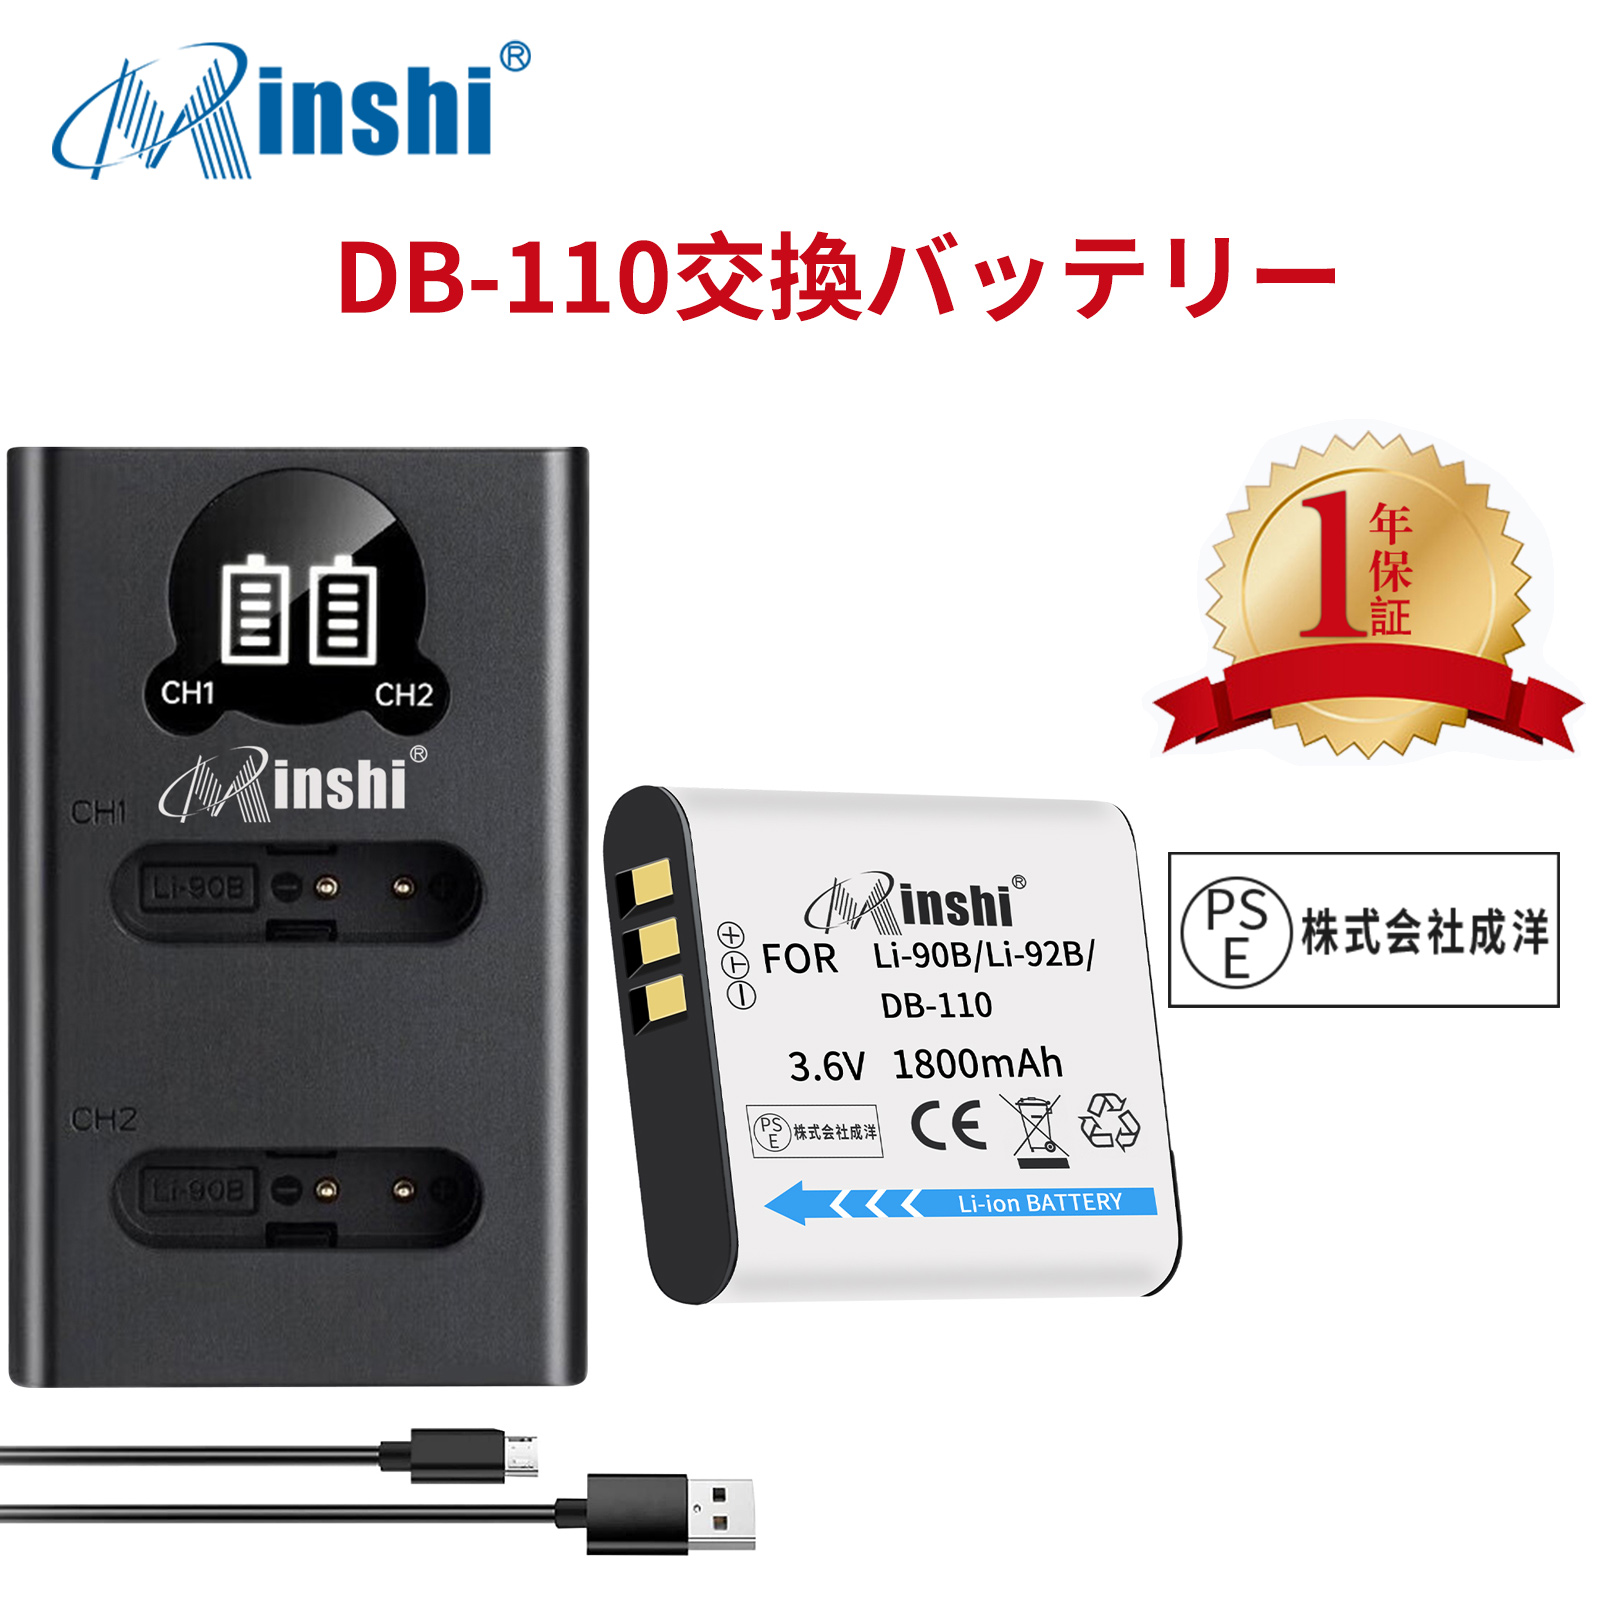 【1年保証】minshi OLYMPUS Stylus SH-1 【1800mAh 3.6V】【互換急速USBチャージャー】 高品質LI-92B互換バッテリーWHG